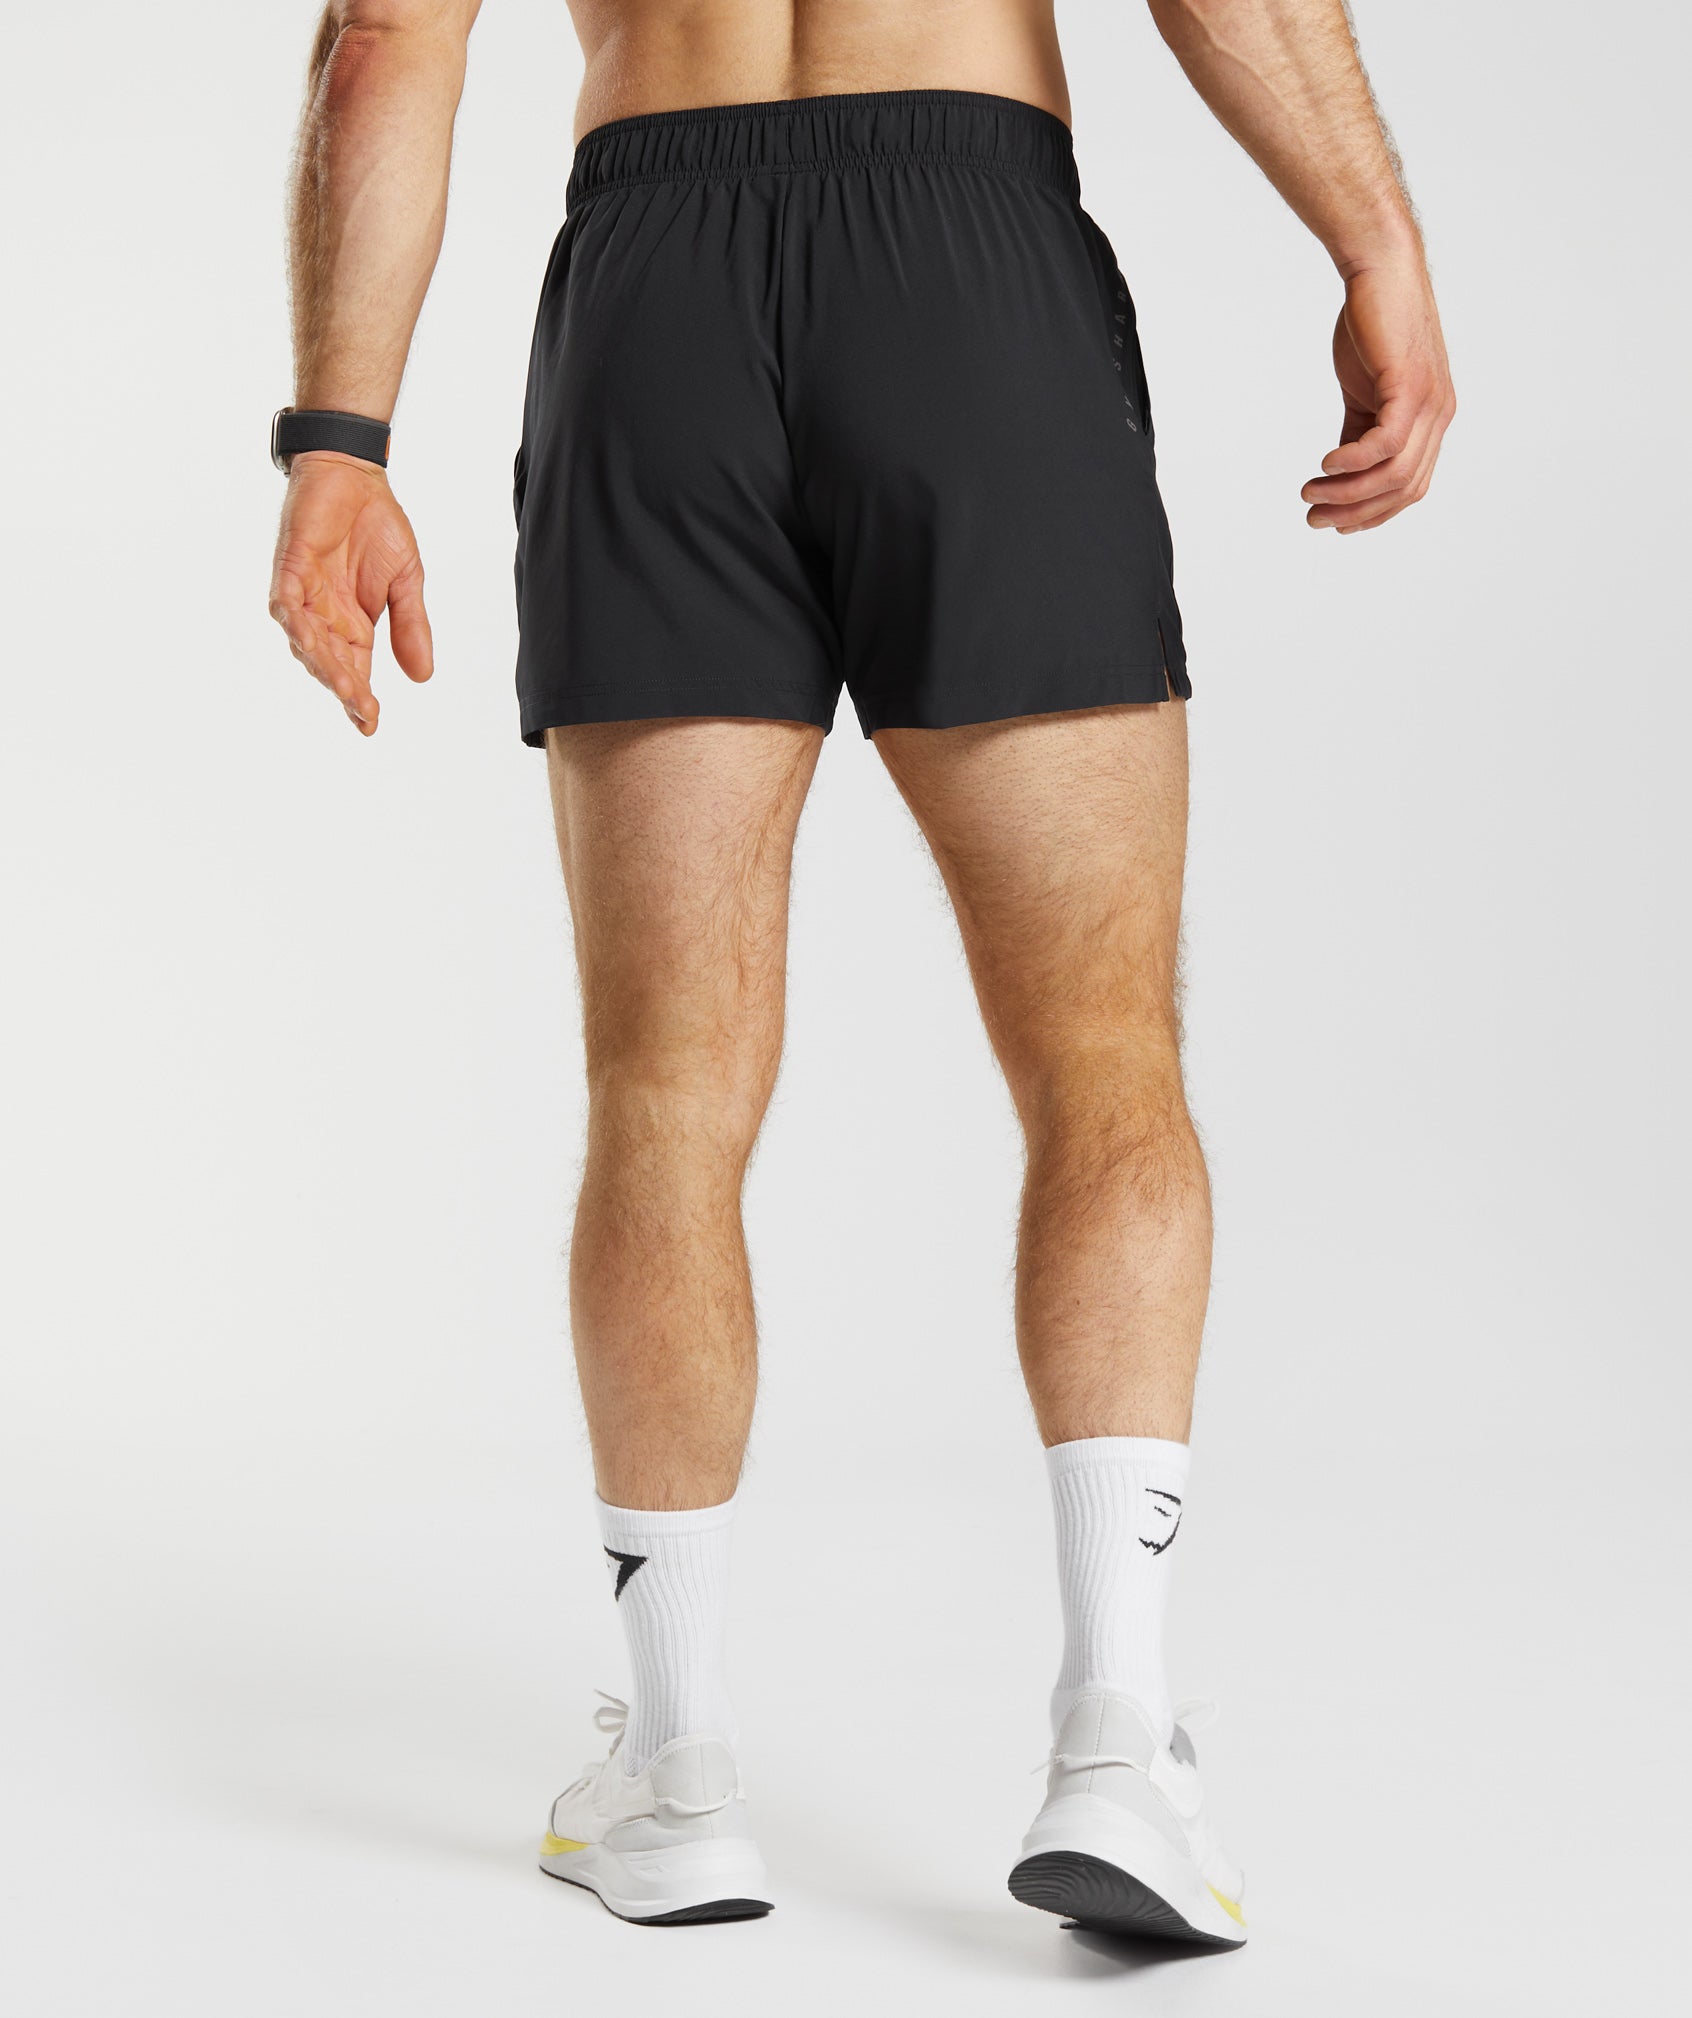 eczipvz Mens Shorts Men's Workout Running Shorts Lightweight Gym Shorts for  Men with Zipper Pockets Black,XL